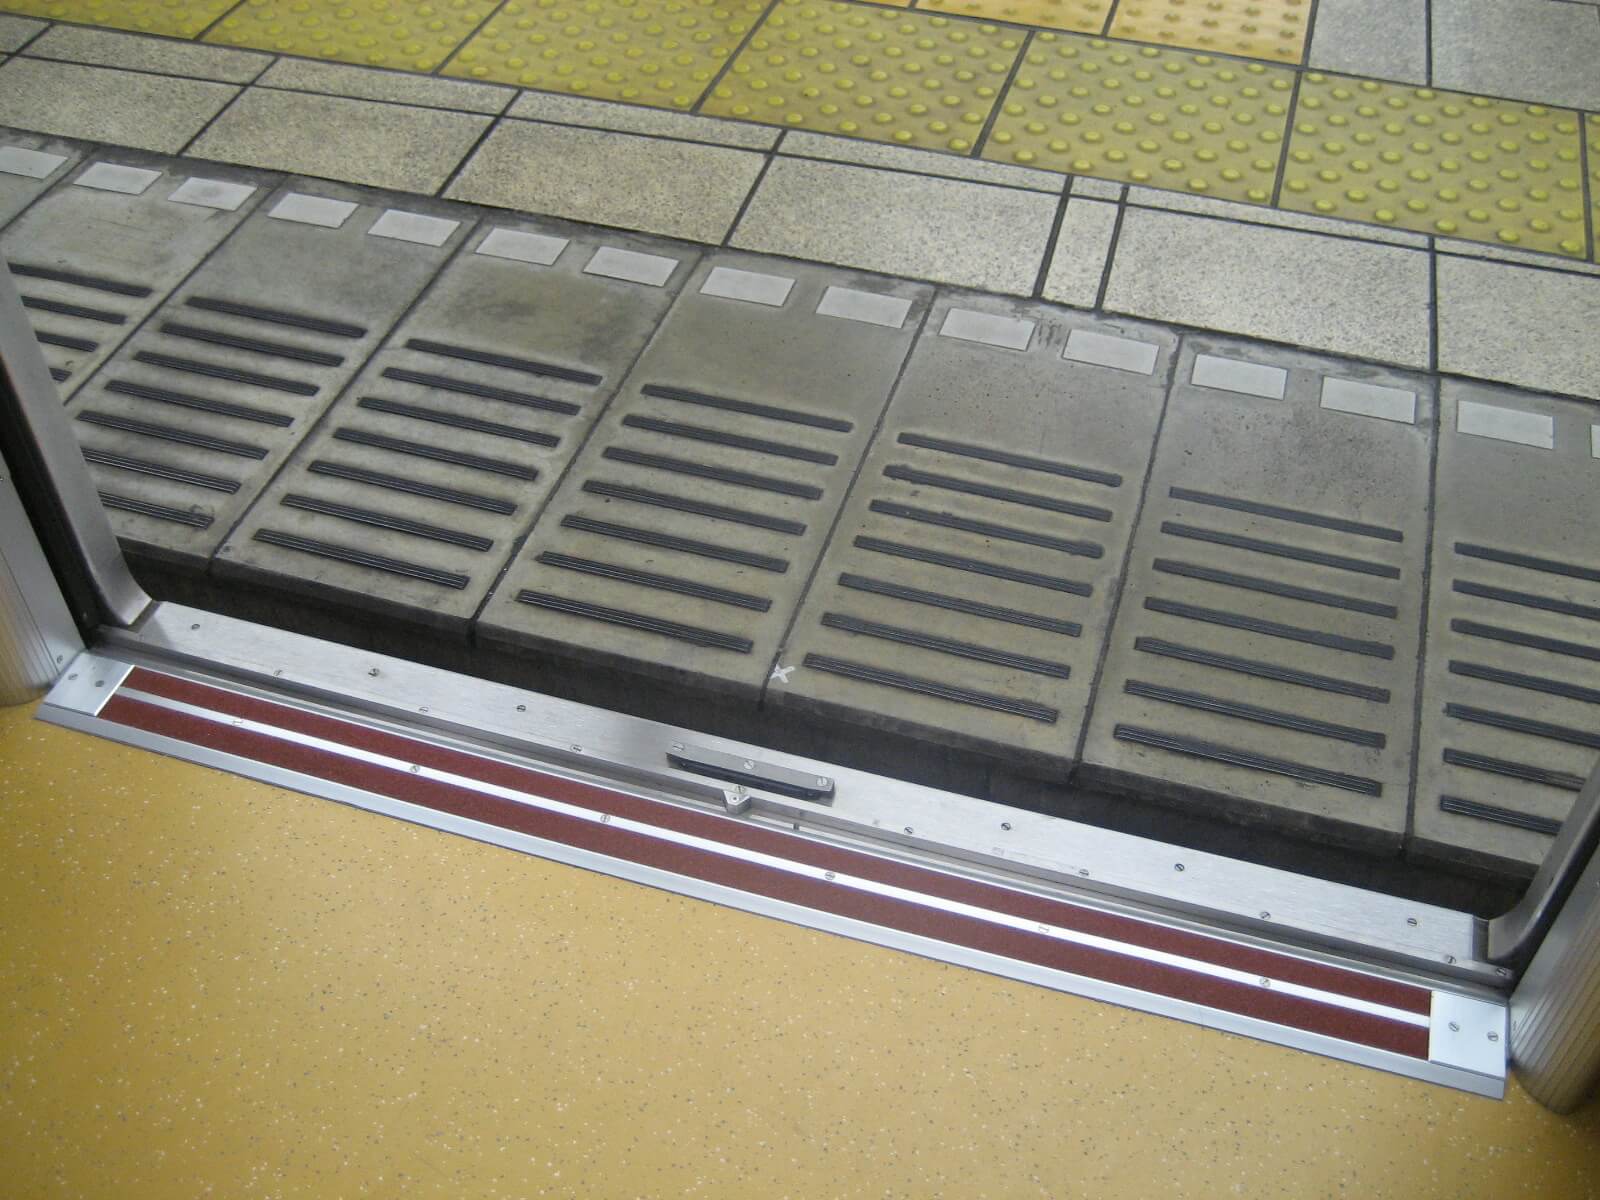 東京メトロ地下鉄車両の見切材として各車両ドアの床面に設置されたハイブリッドストーン アベイラス アンプロップをドアが開いた状態で車両内から見た様子